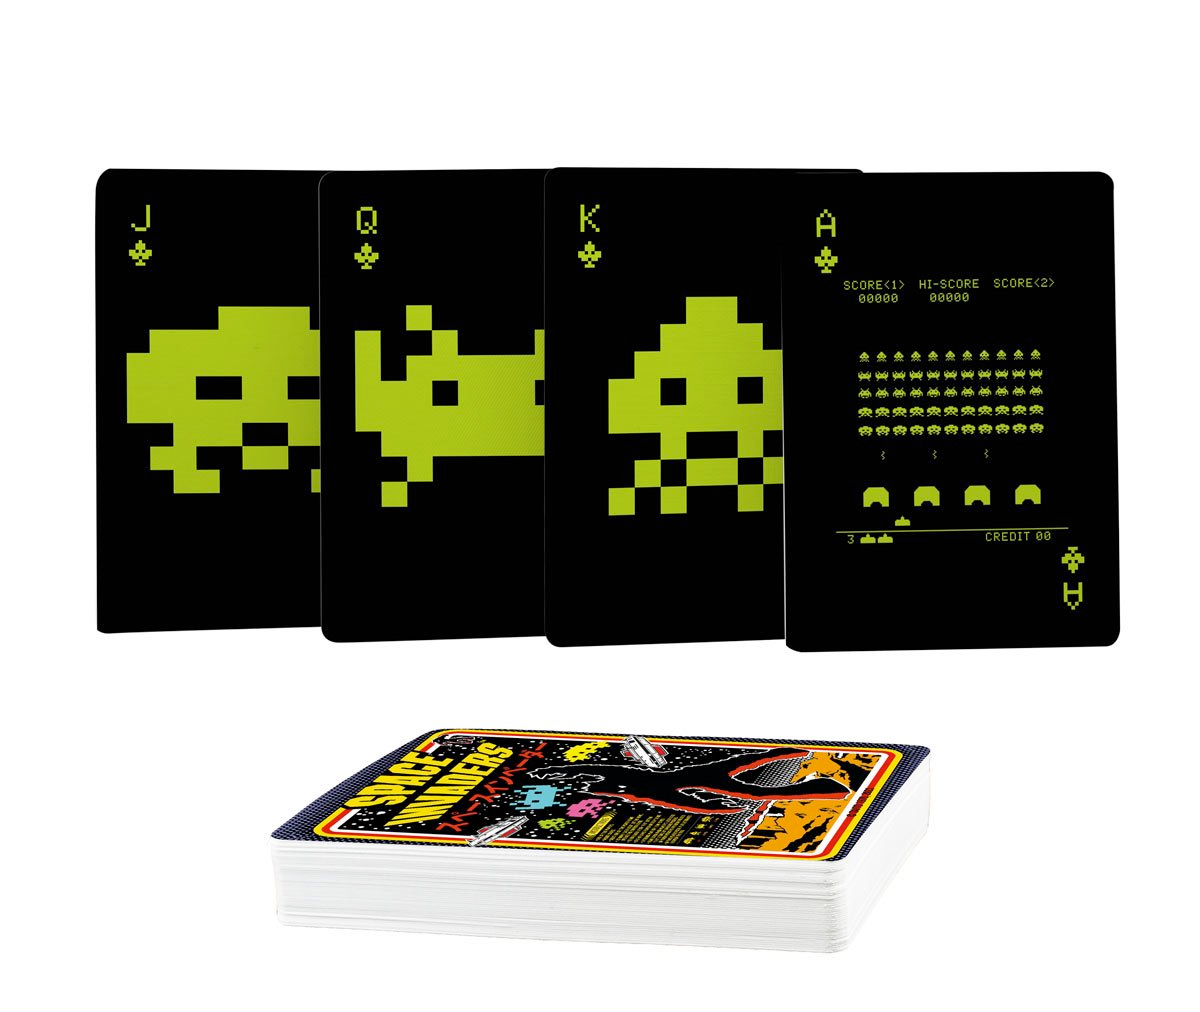 Baralho Space Invaders 8-bit (Aquarius) class=